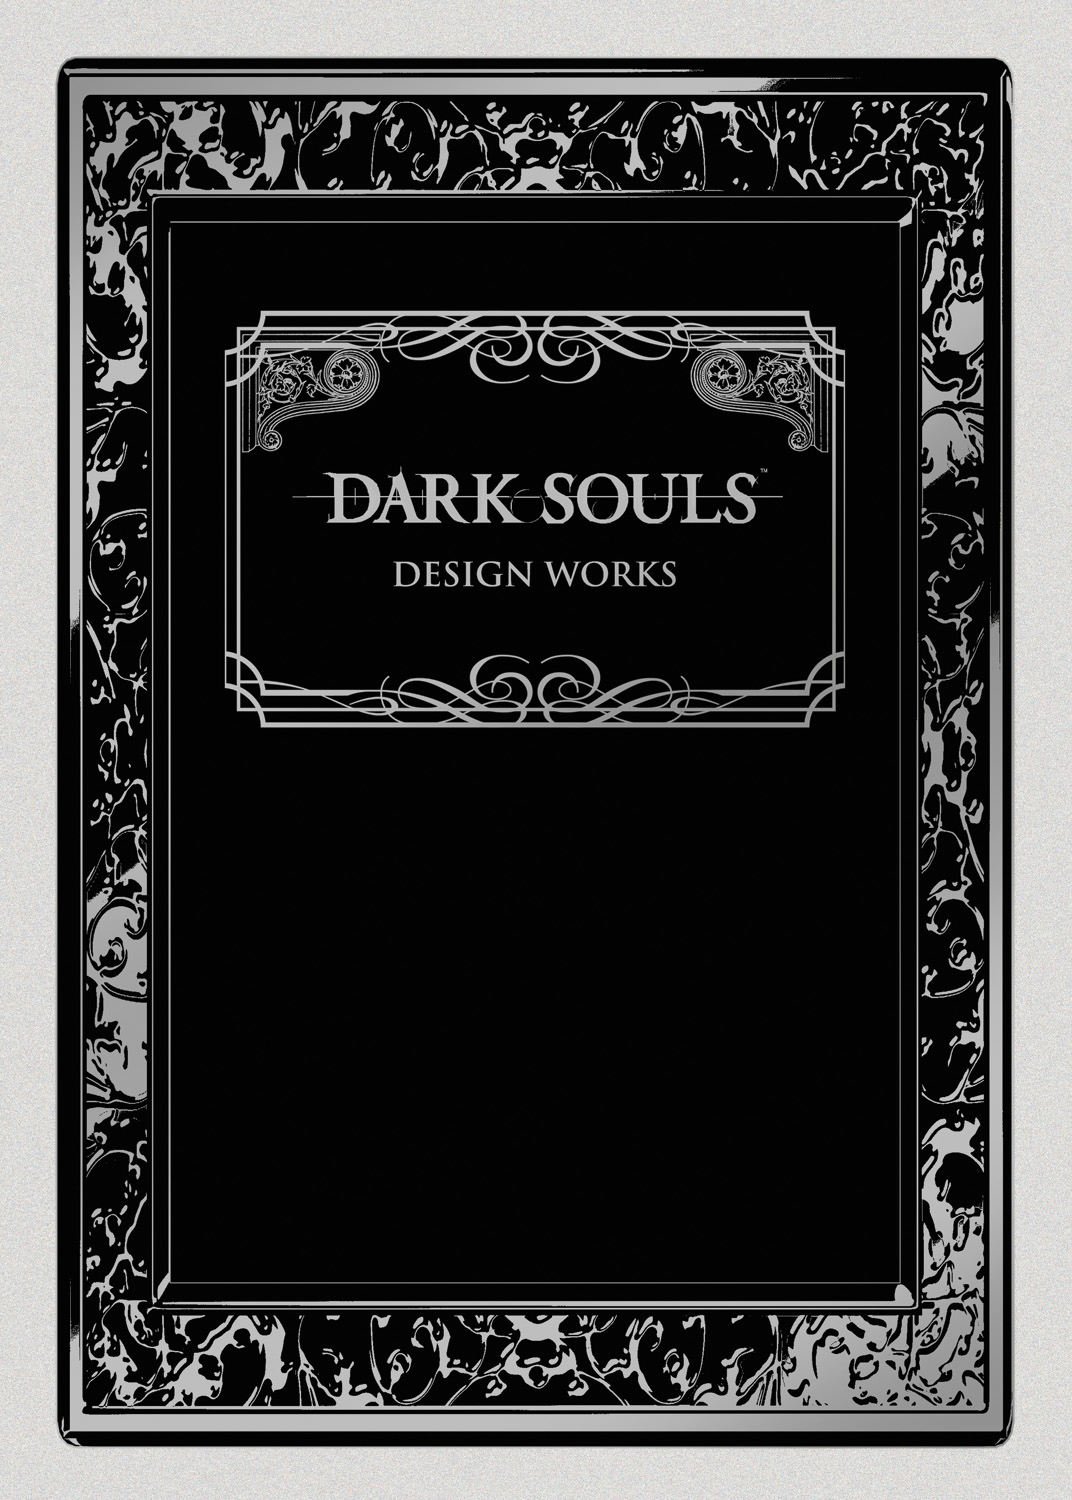 Dark Souls Design Works Hardcover Artbook